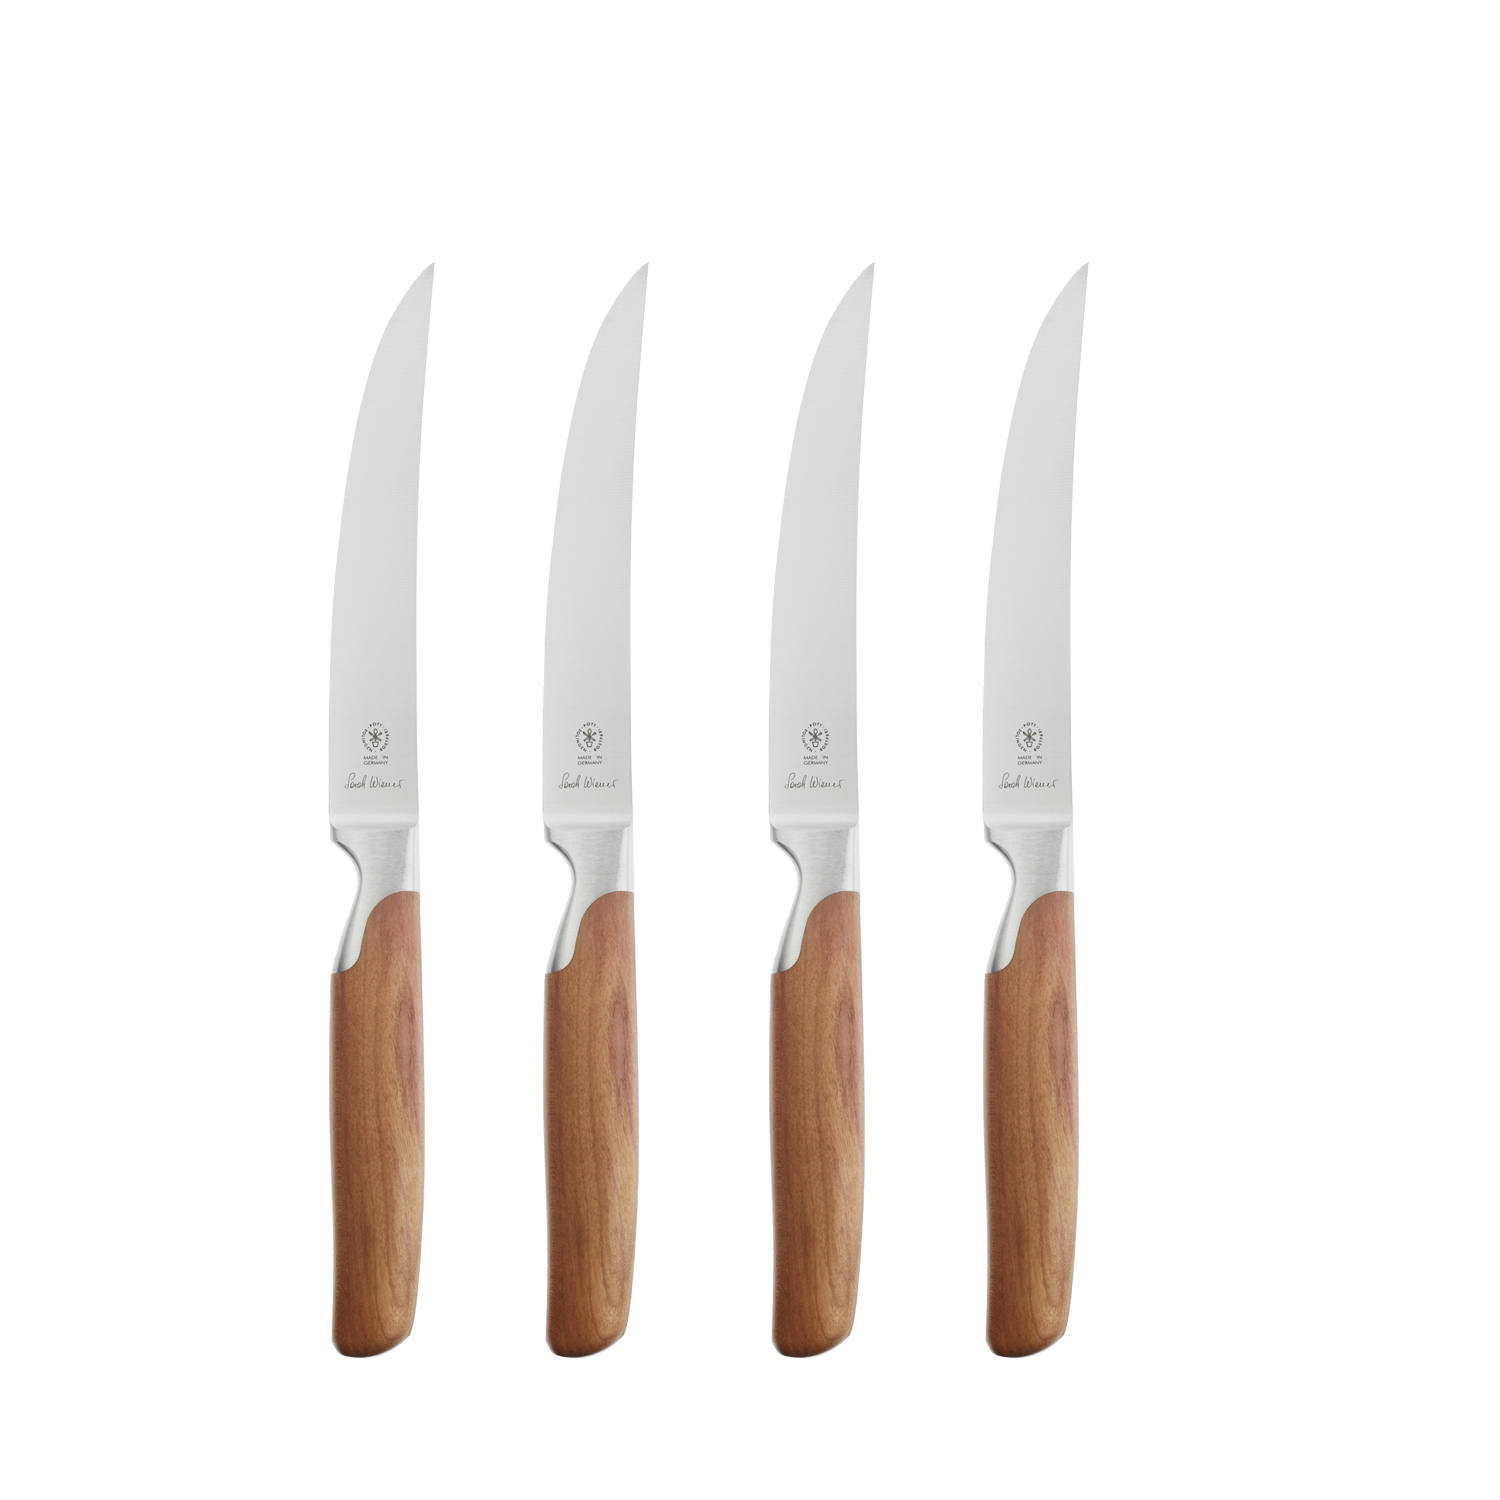 2810 224 Pott Sarah Wiener Messer Knives